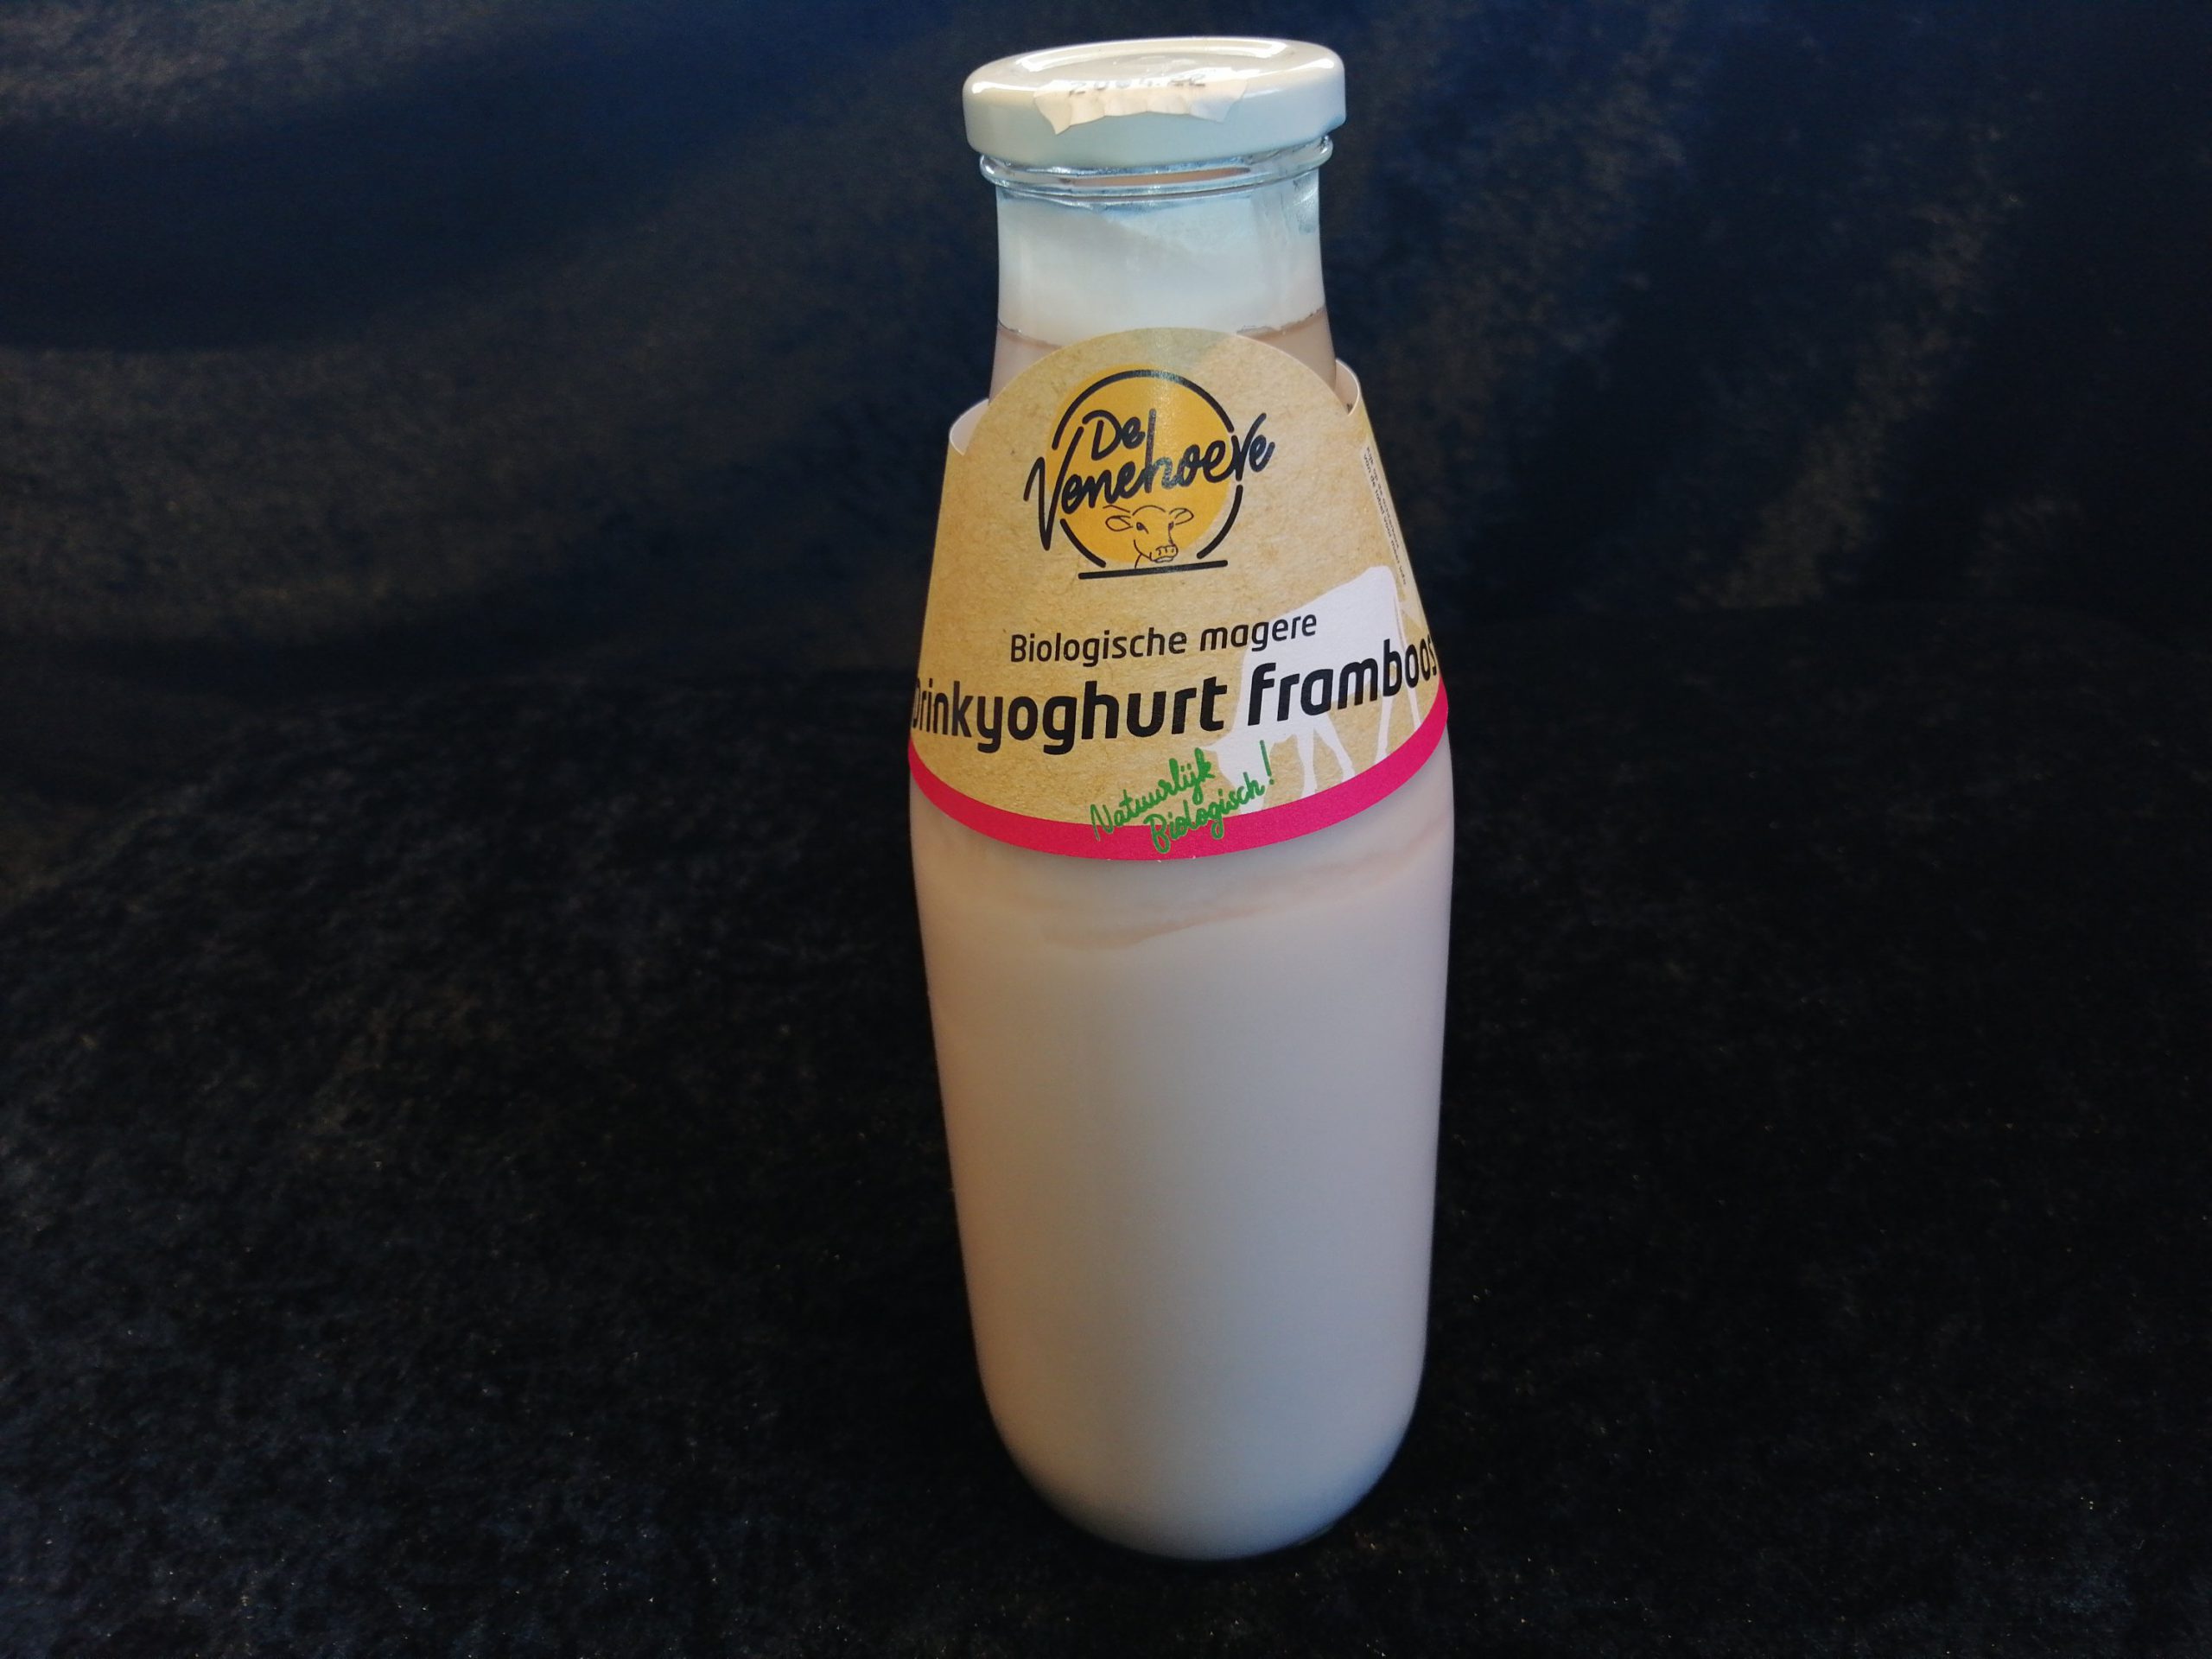 Biologische magere drinkyoghurt framboos